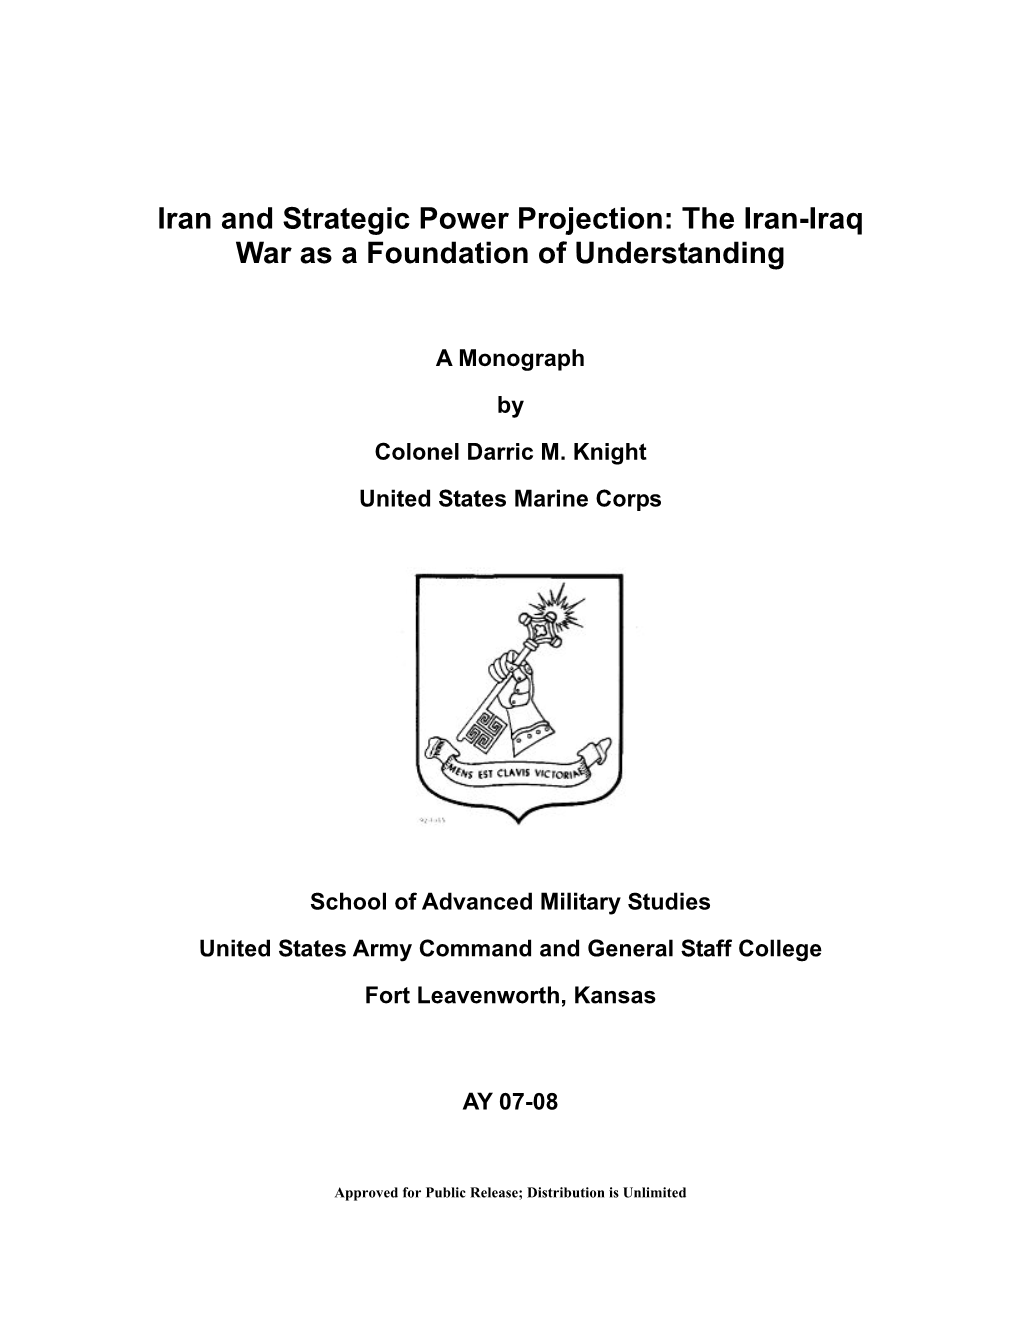 The Iran-Iraq War As a Foundation of Understanding